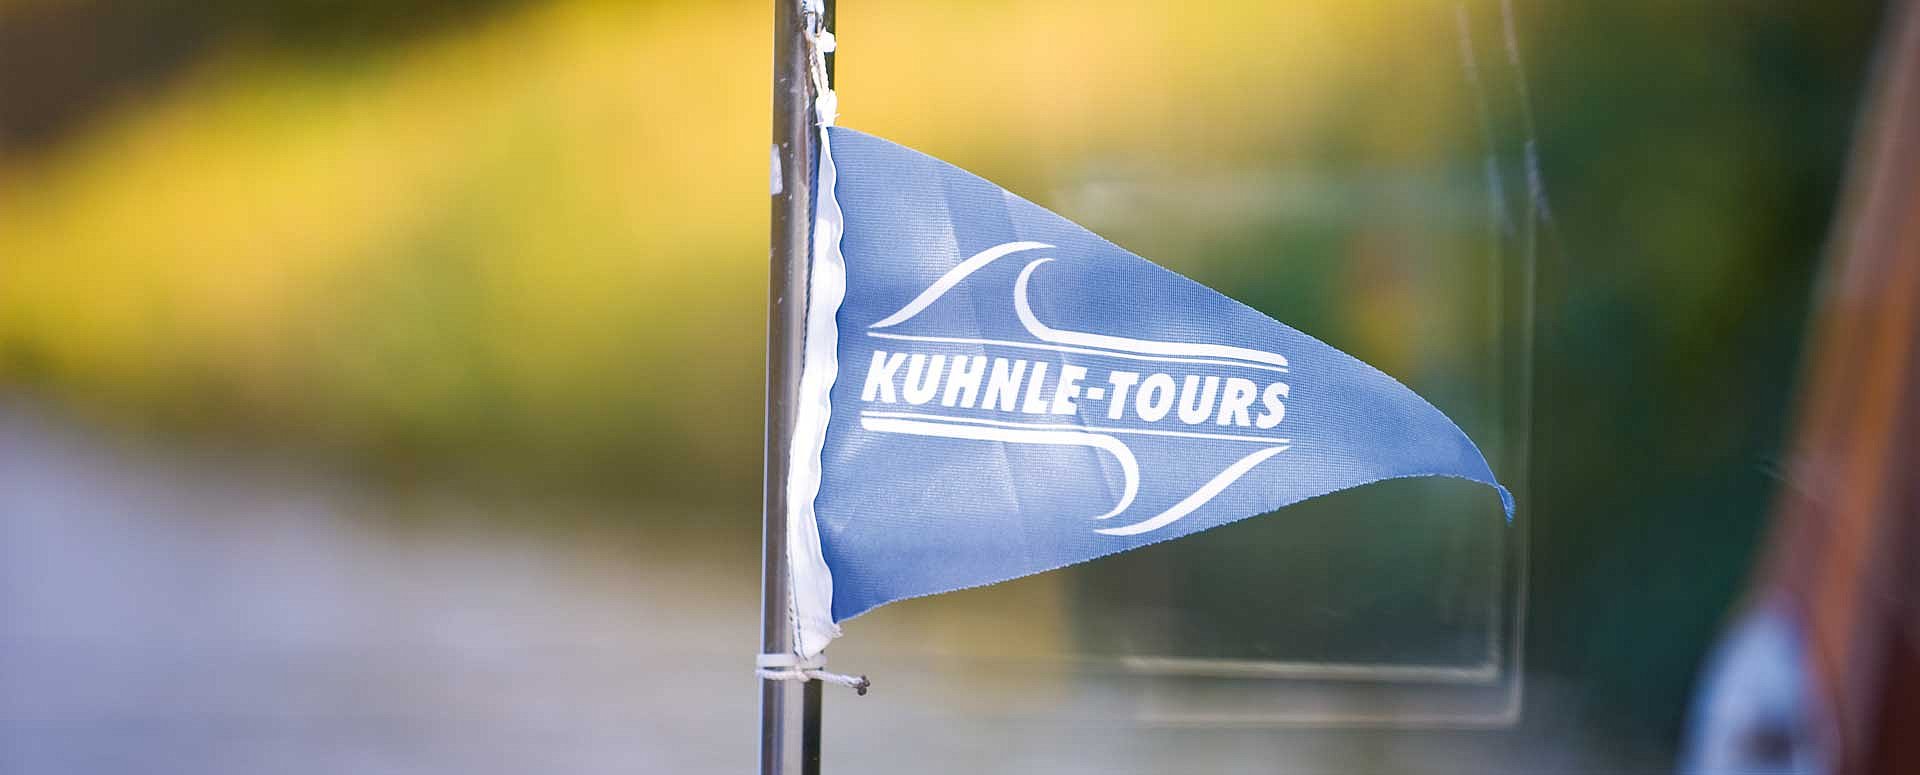 Kuhnle Tours Wimpel